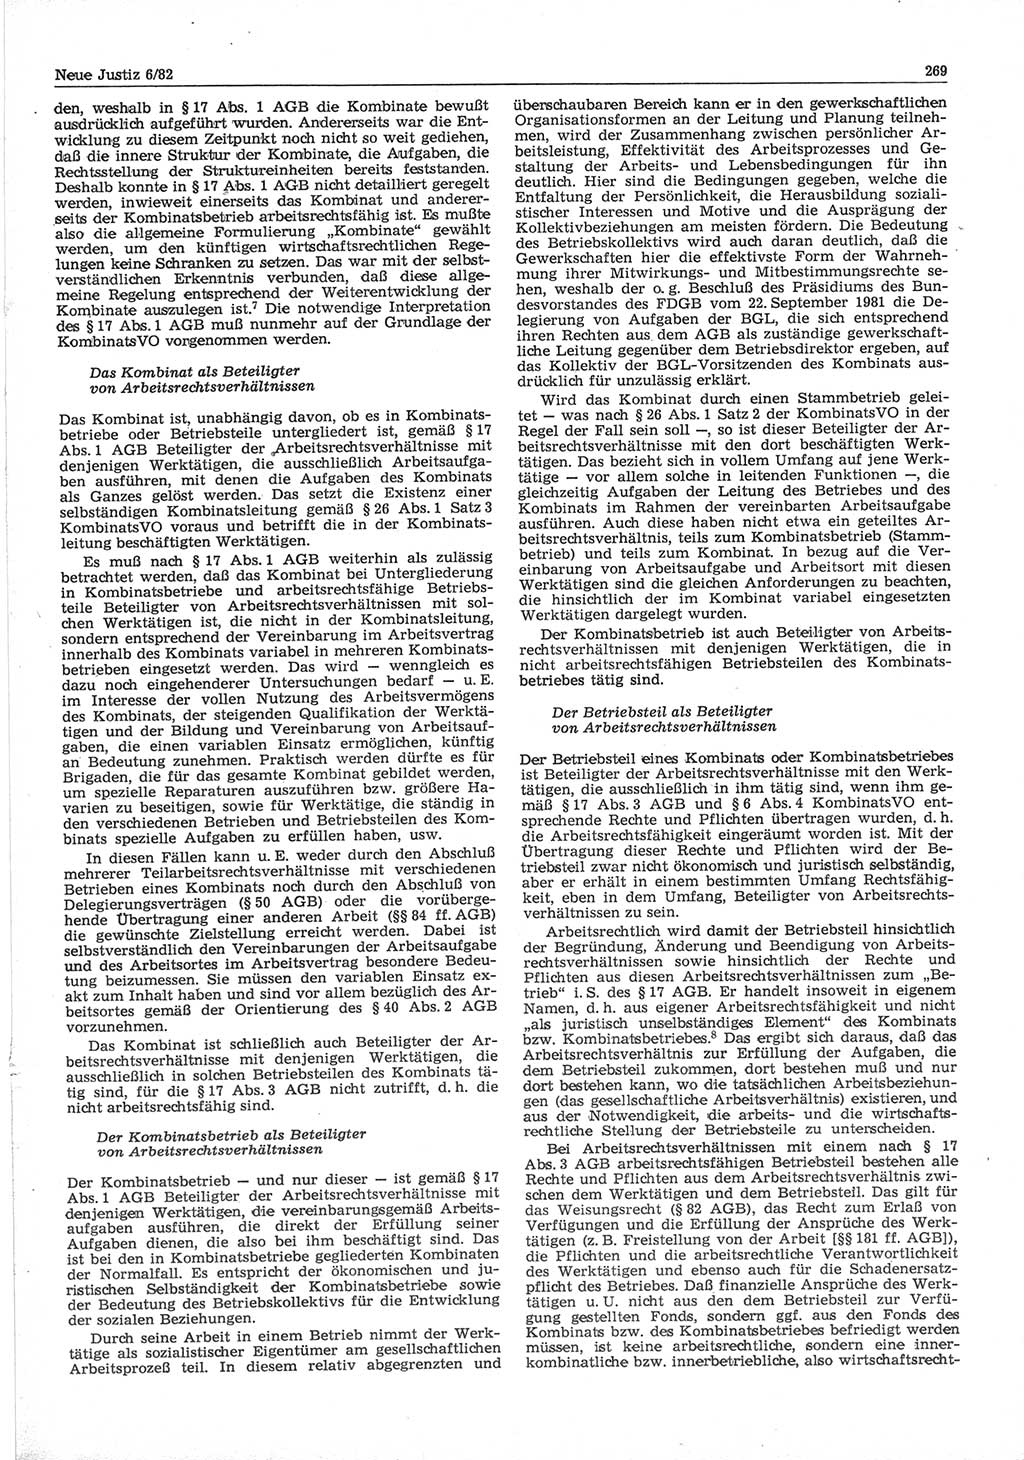 Neue Justiz (NJ), Zeitschrift für sozialistisches Recht und Gesetzlichkeit [Deutsche Demokratische Republik (DDR)], 36. Jahrgang 1982, Seite 269 (NJ DDR 1982, S. 269)